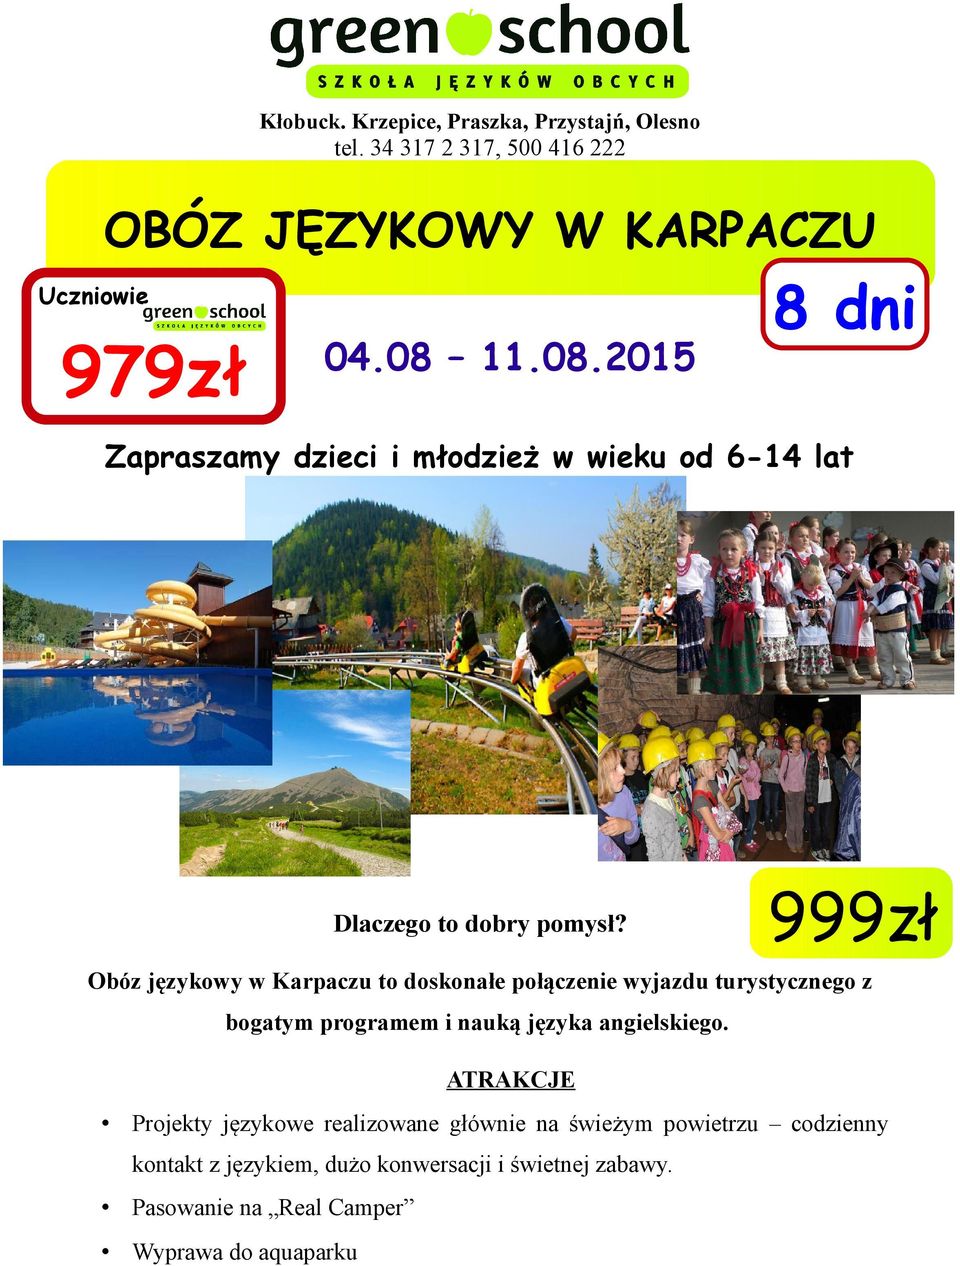 999zł Obóz językowy w Karpaczu to doskonałe połączenie wyjazdu turystycznego z bogatym programem i nauką języka angielskiego.